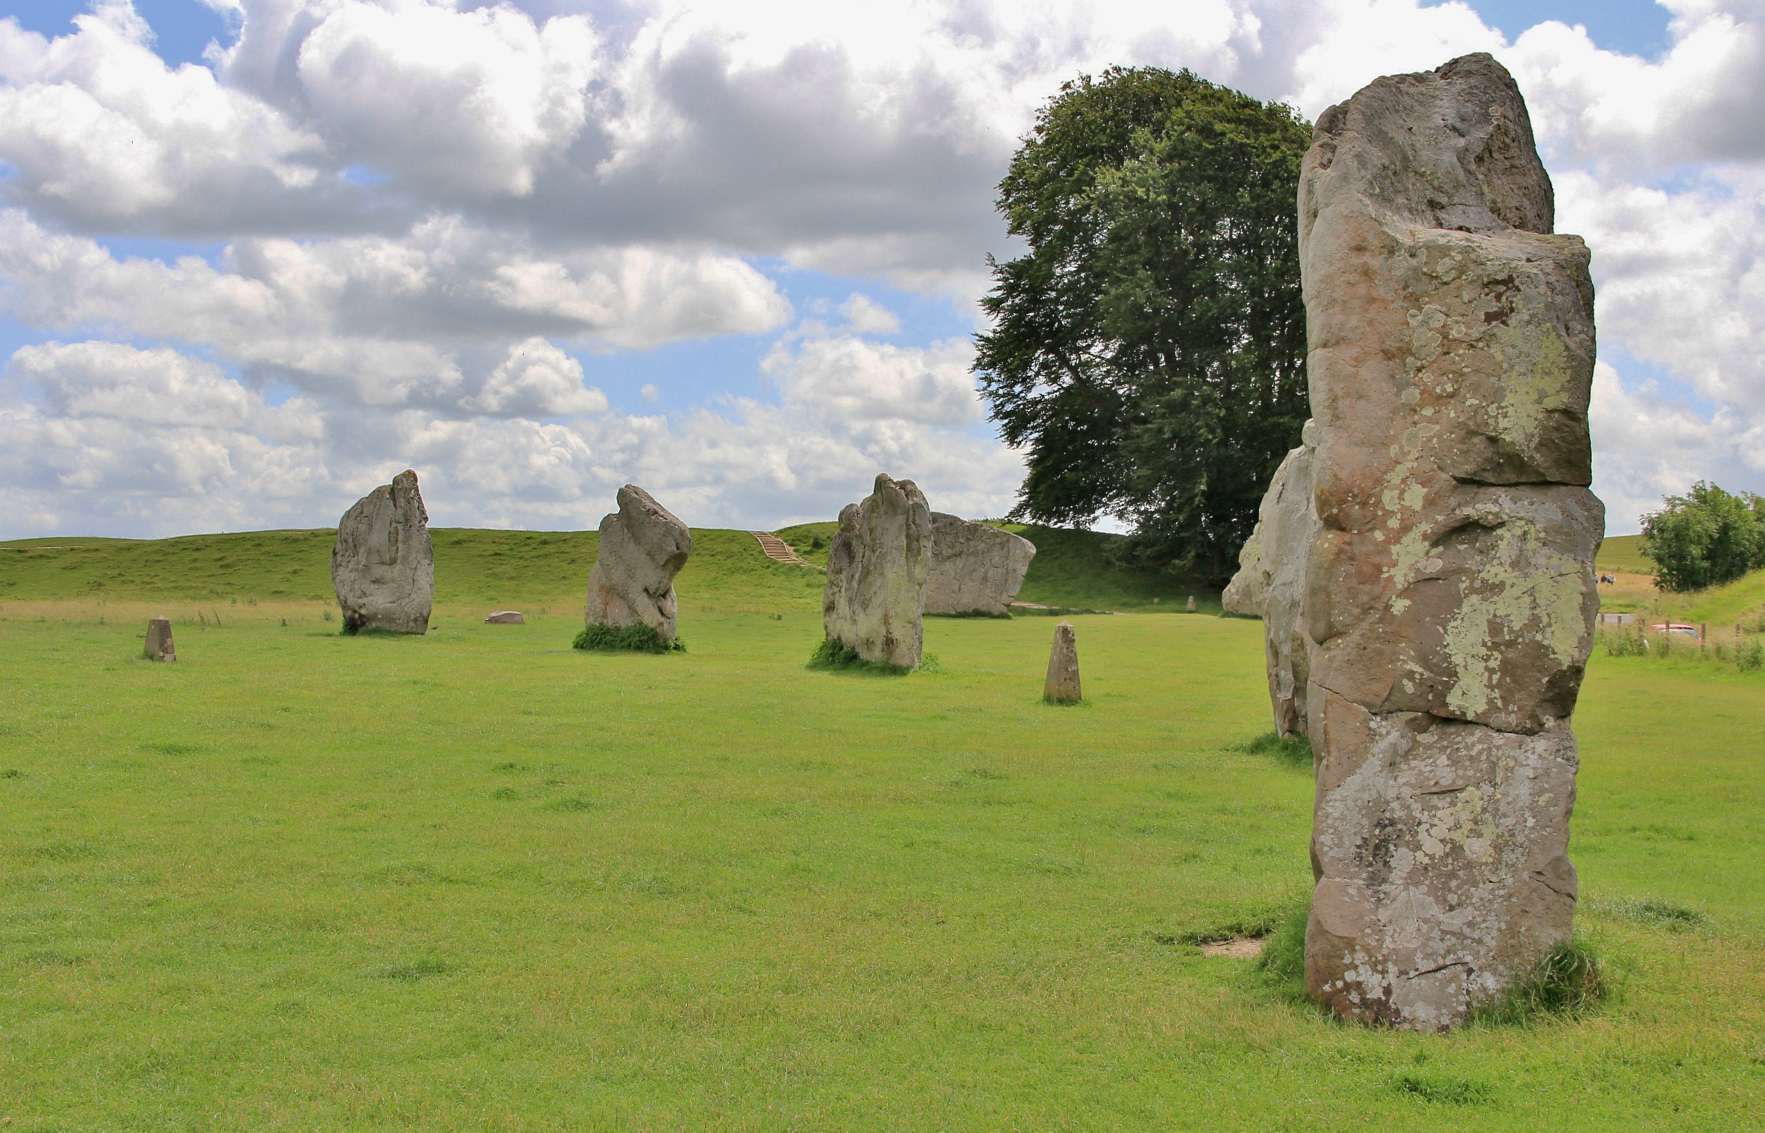 Ogromni kameni krug Avebury širine 330 metara izgrađen je između 1,082. godine prije Krista i 2850 godine prije Krista. Sadrži tri kamena kruga i izvorno se može pohvaliti sa 2200 ogromnih stojećih kamenja te je predmet značajnog arheološkog interesa još od 100. stoljeća.